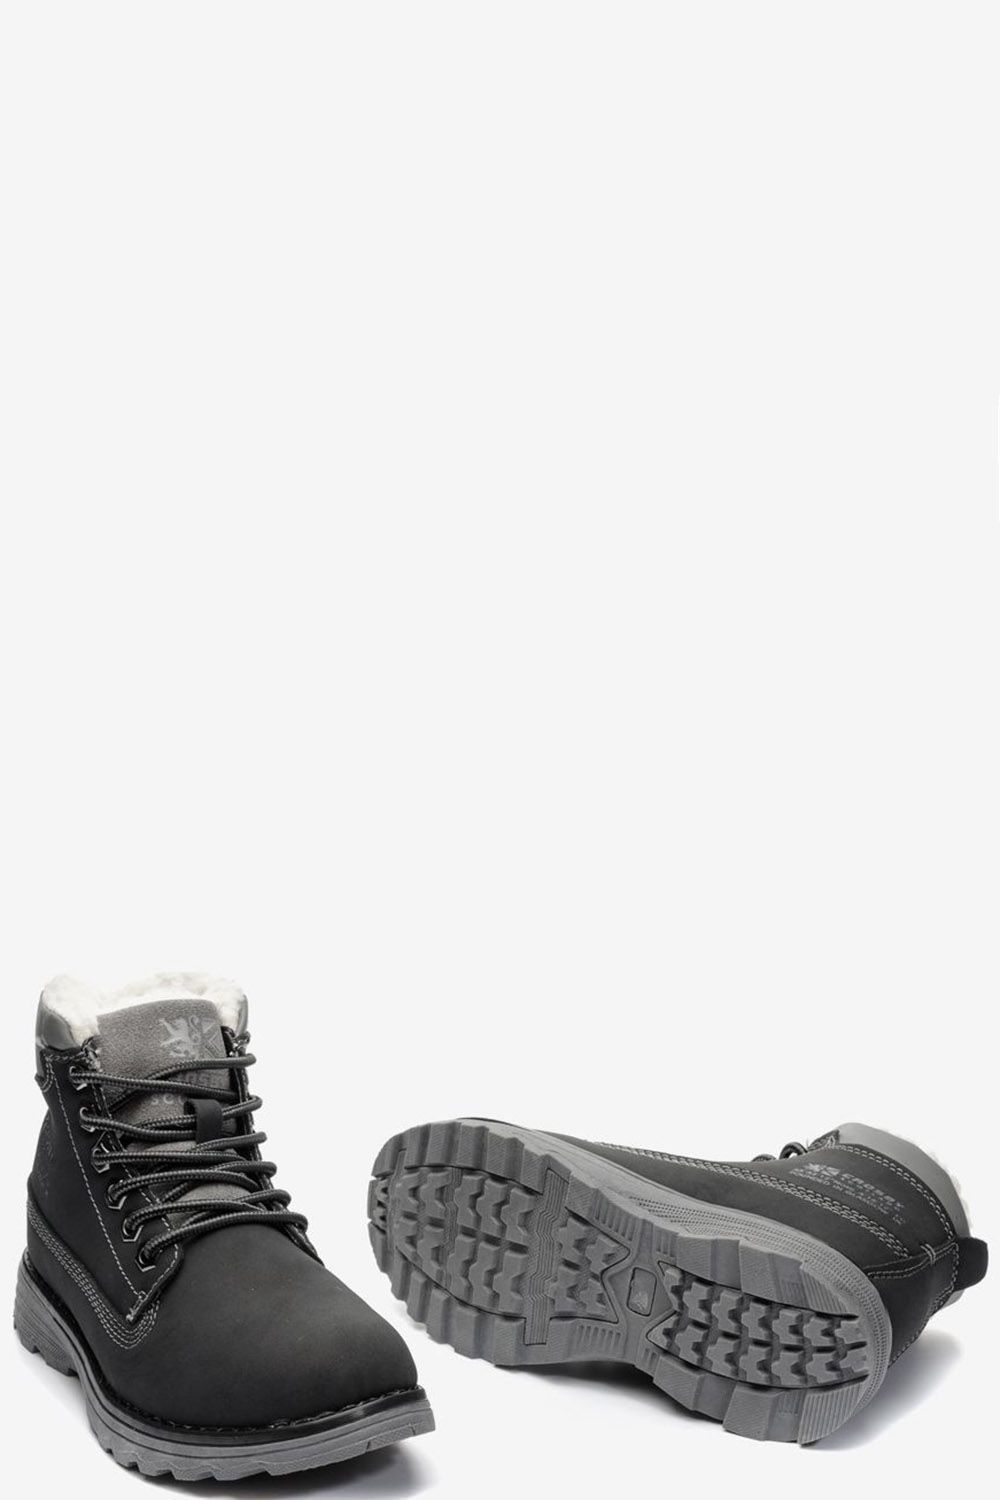 Ботинки Crosby, размер 31, цвет черный 288350/01-01 - фото 3